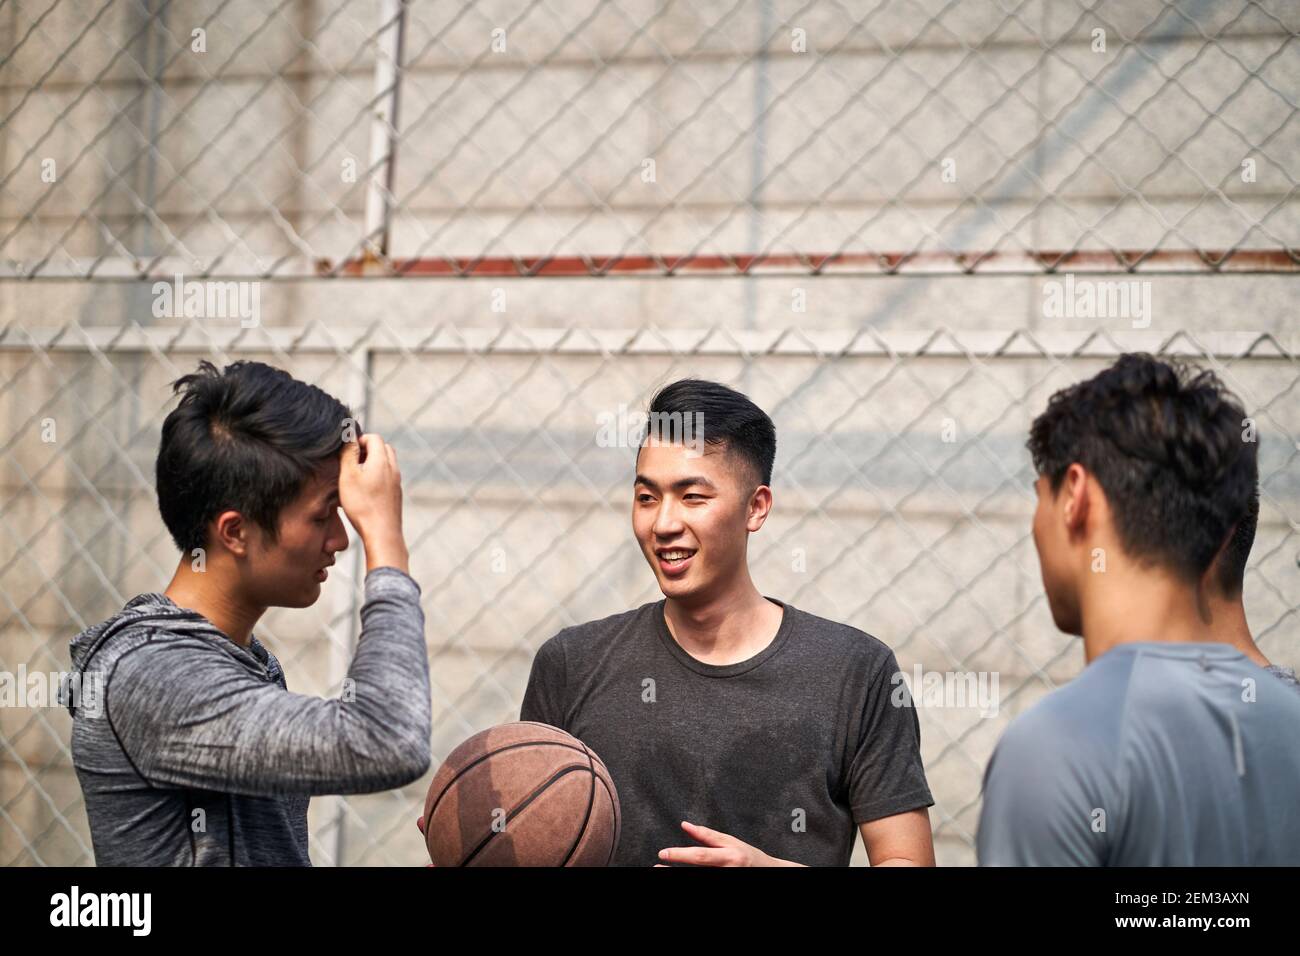 de jeunes joueurs de basket-ball asiatiques bavardent en parlant en se relaxant sur un terrain en plein air Banque D'Images